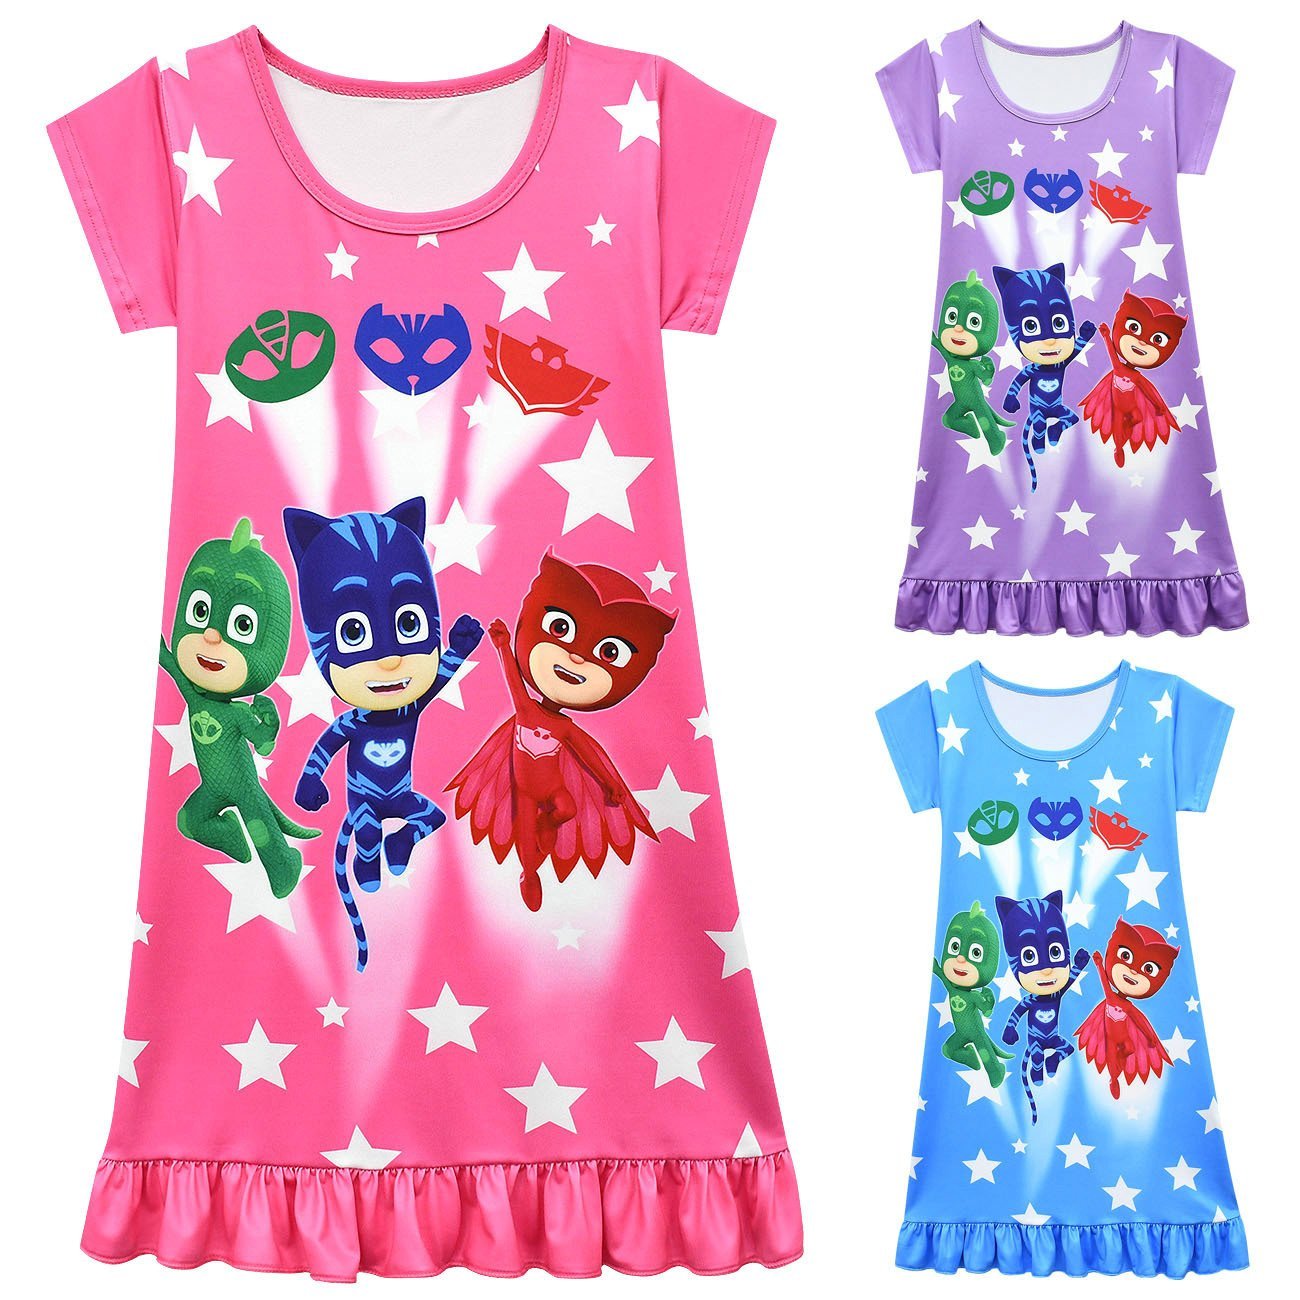 PJ Masks Pajamas Little Hero Nightgown for Toddler Kids Ruffle Dress